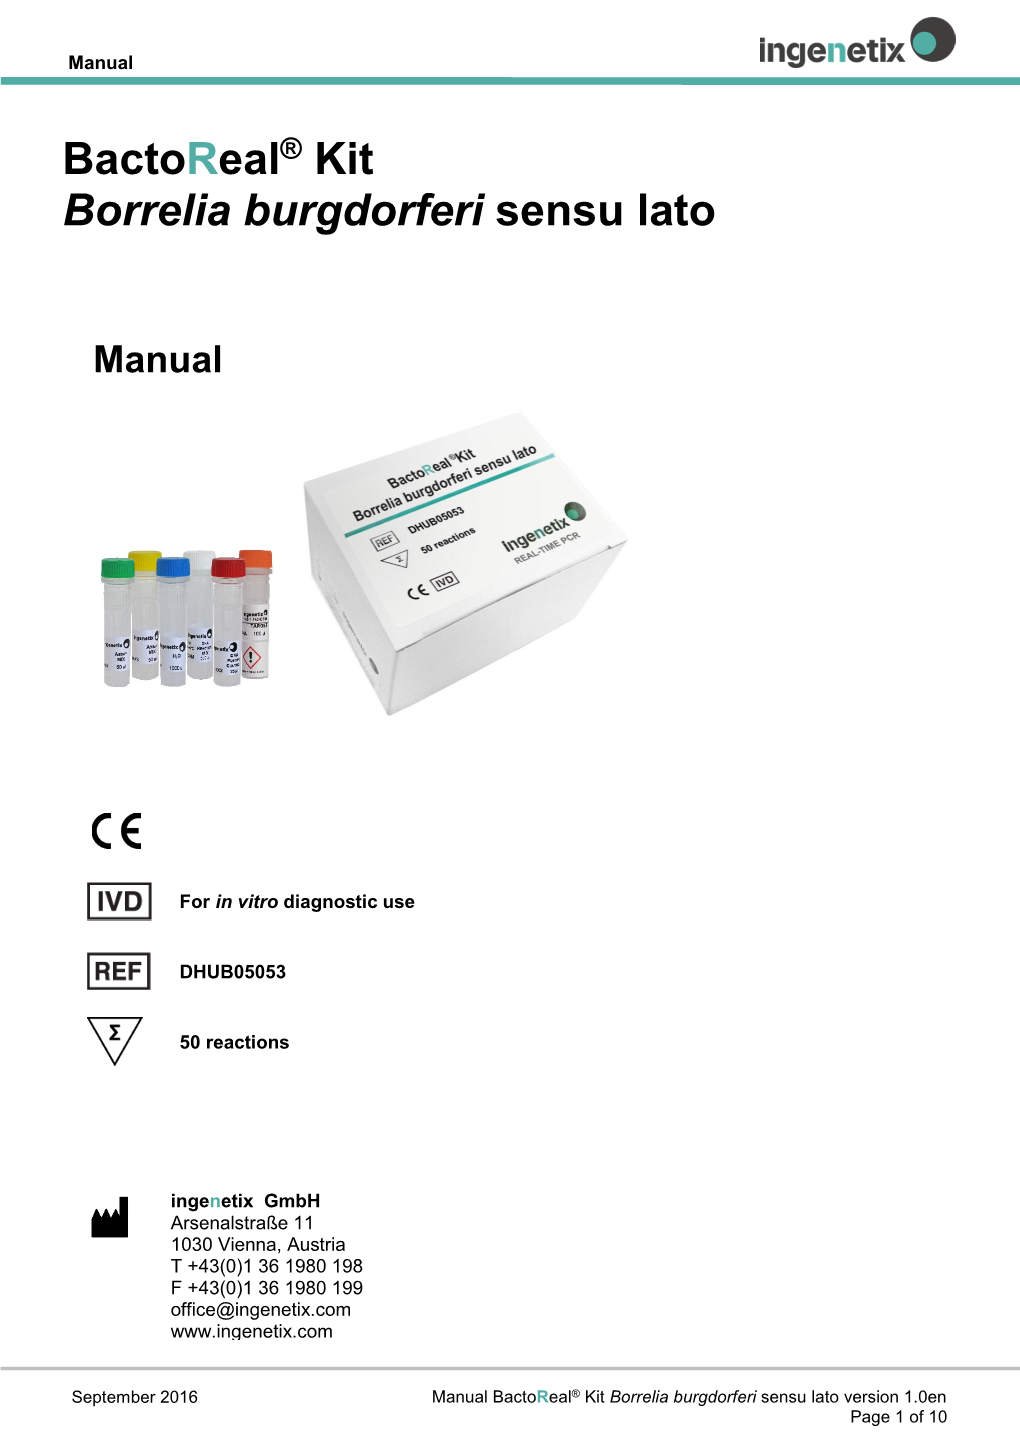 Bactoreal® Kit Borrelia Burgdorferi Sensu Lato